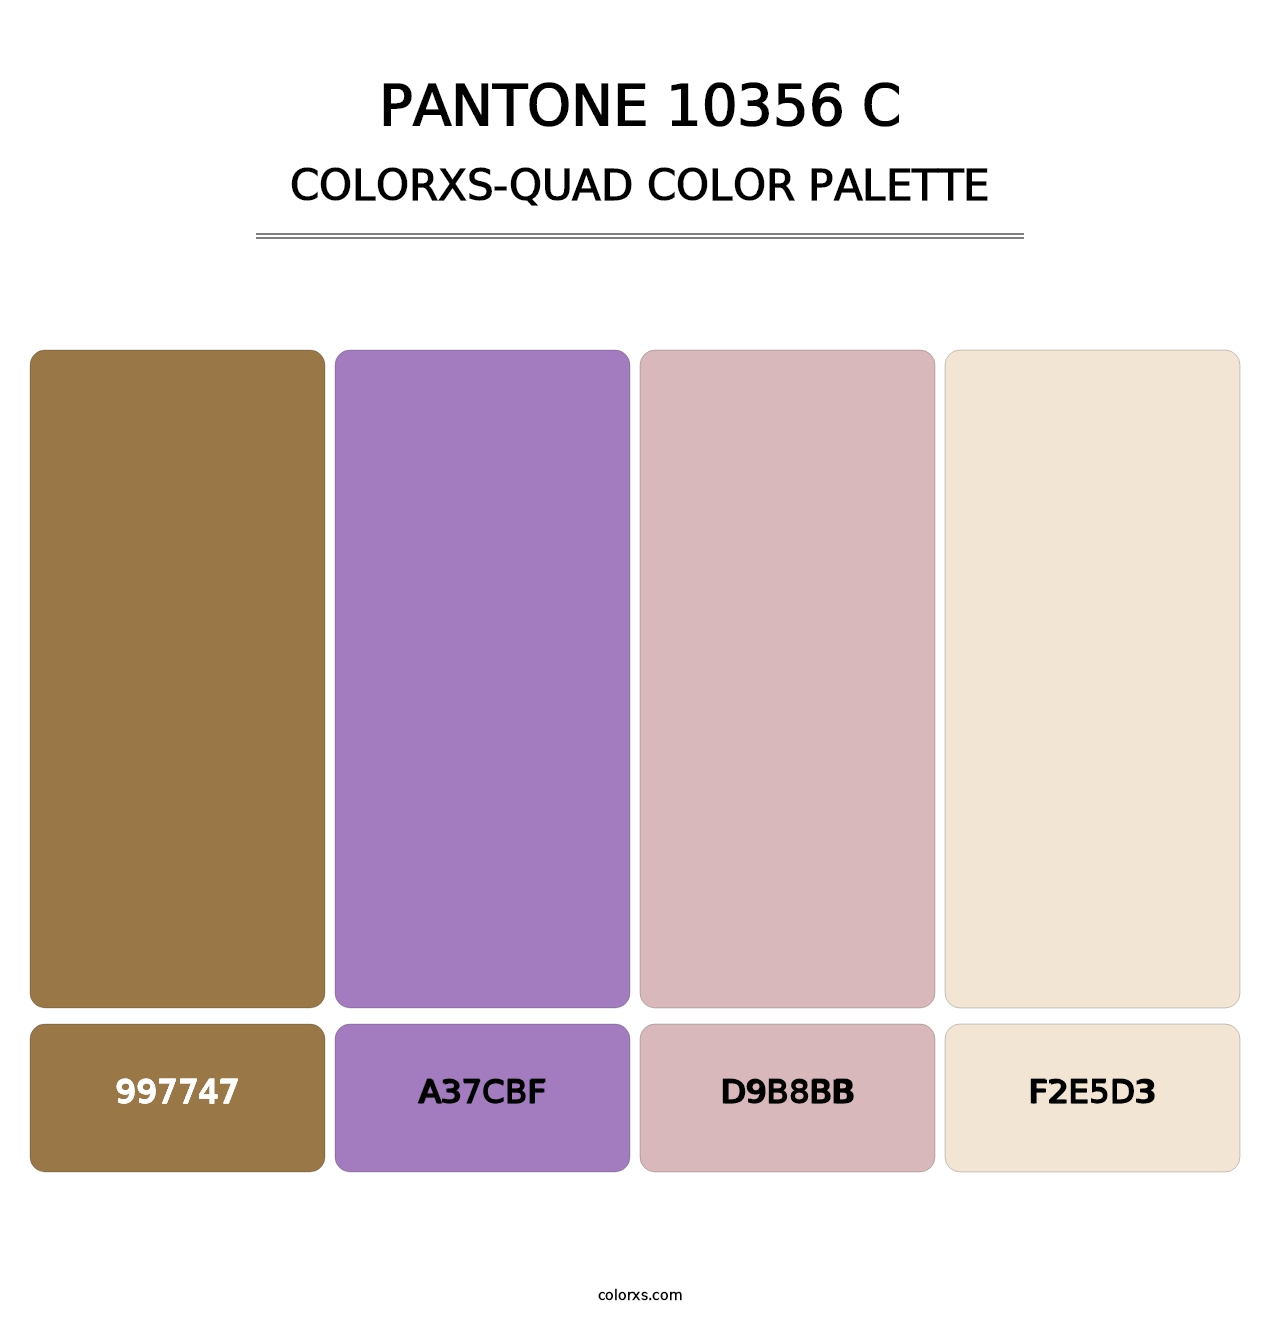 PANTONE 10356 C - Colorxs Quad Palette